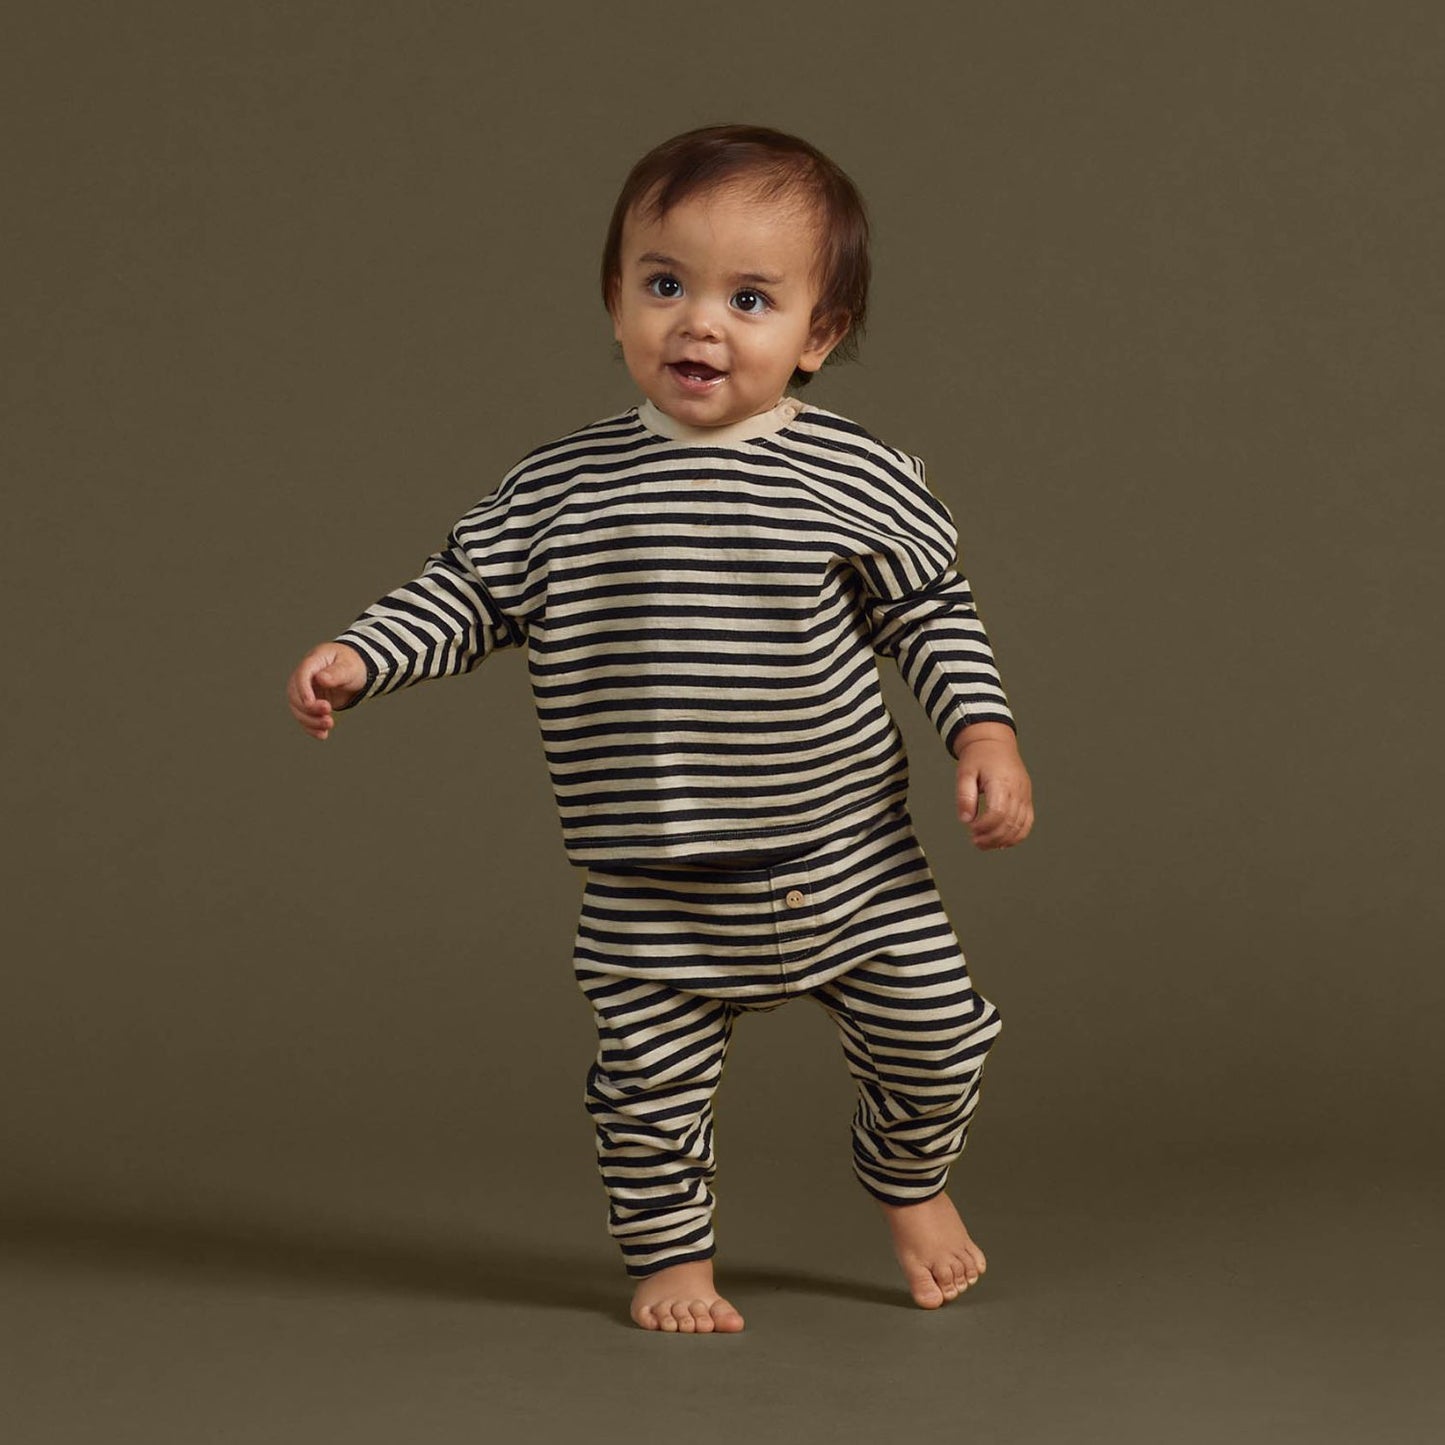 Toddler wearing Rylee and Cru Camden Long Sleeve Tee - Black Stripe